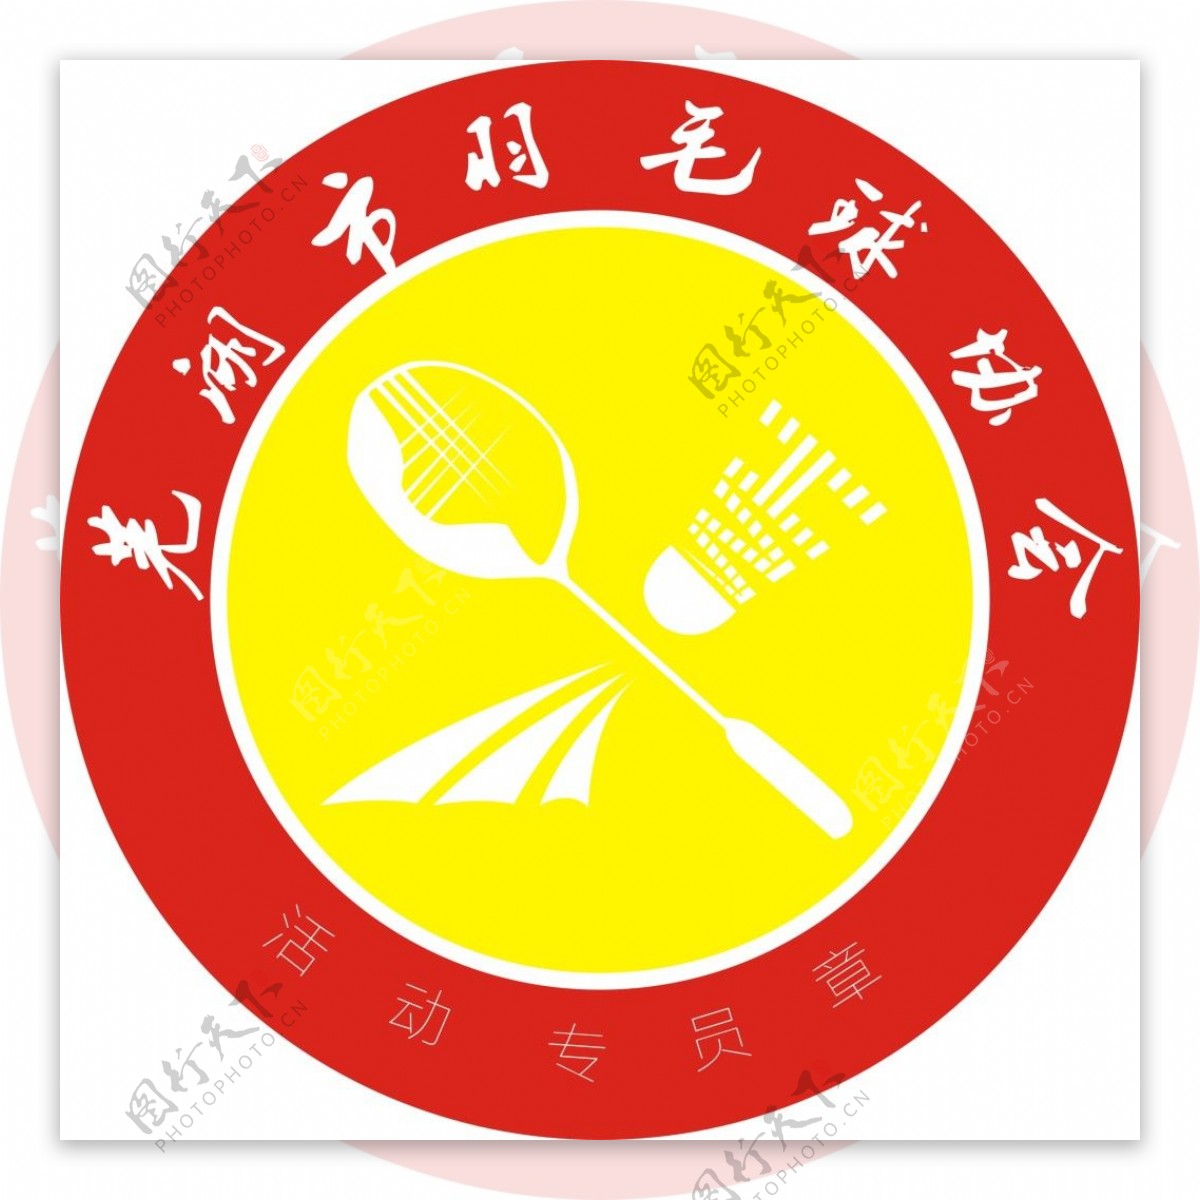 羽毛球协会标志